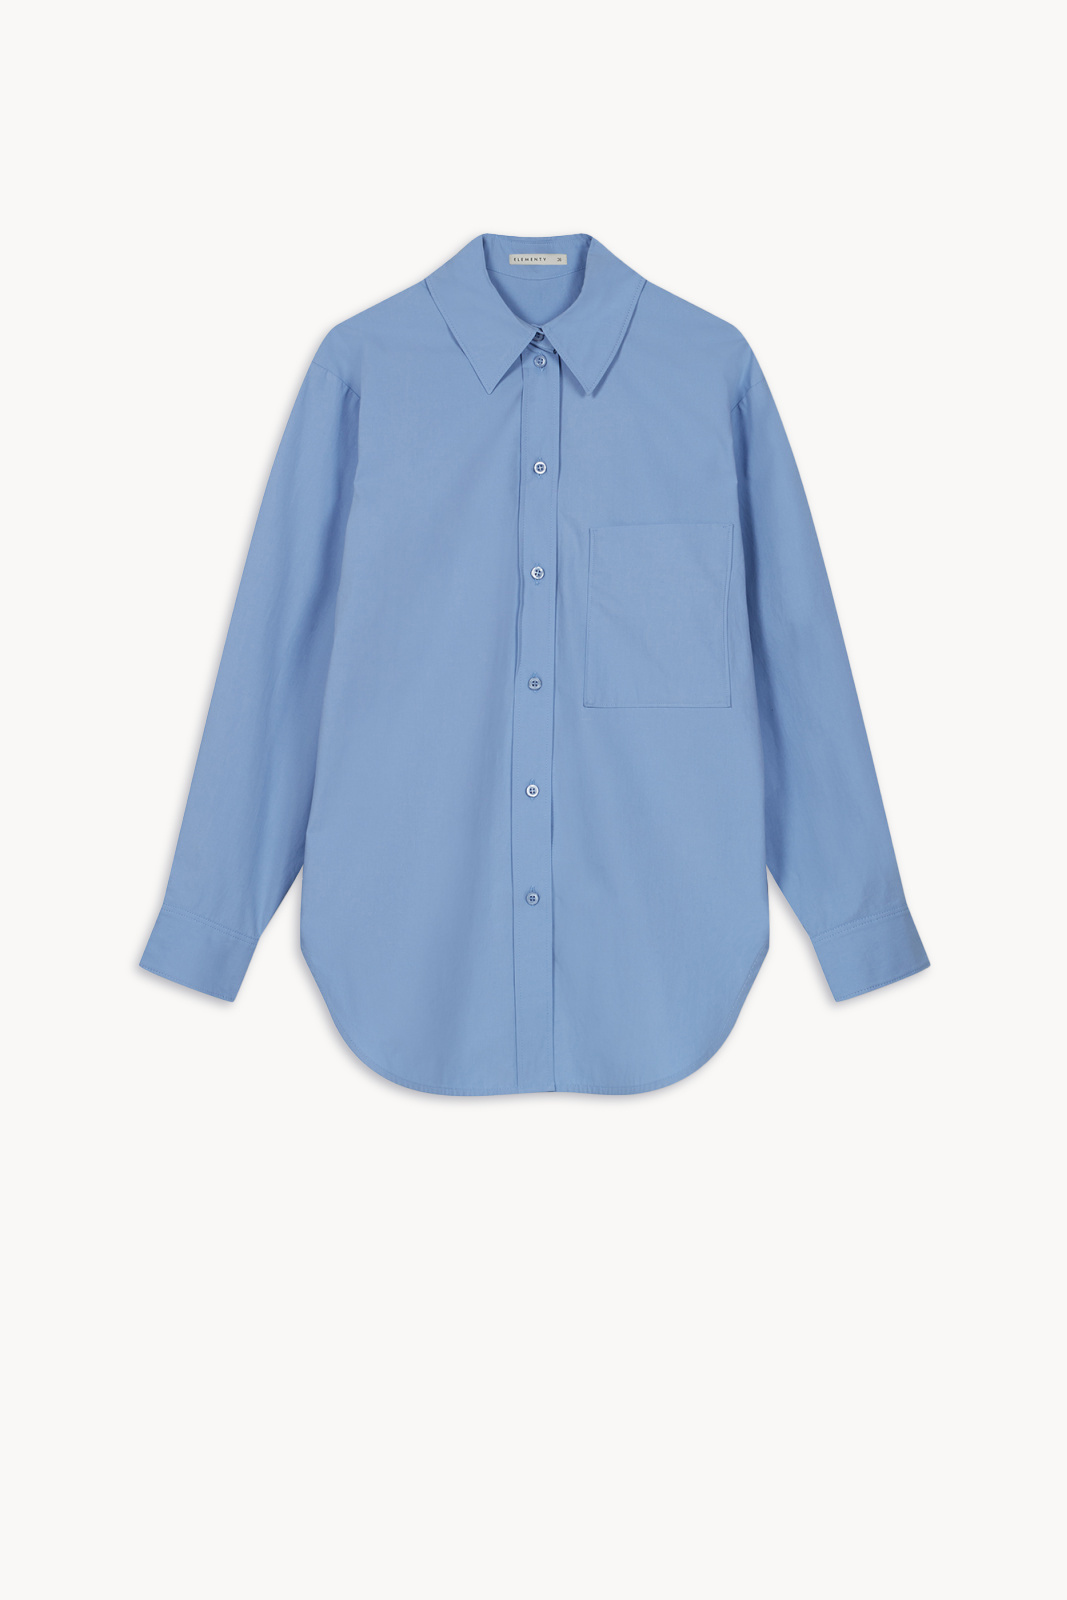 Kora Poplin Koszula Niebieski Koszule, bluzki, topy Elementy